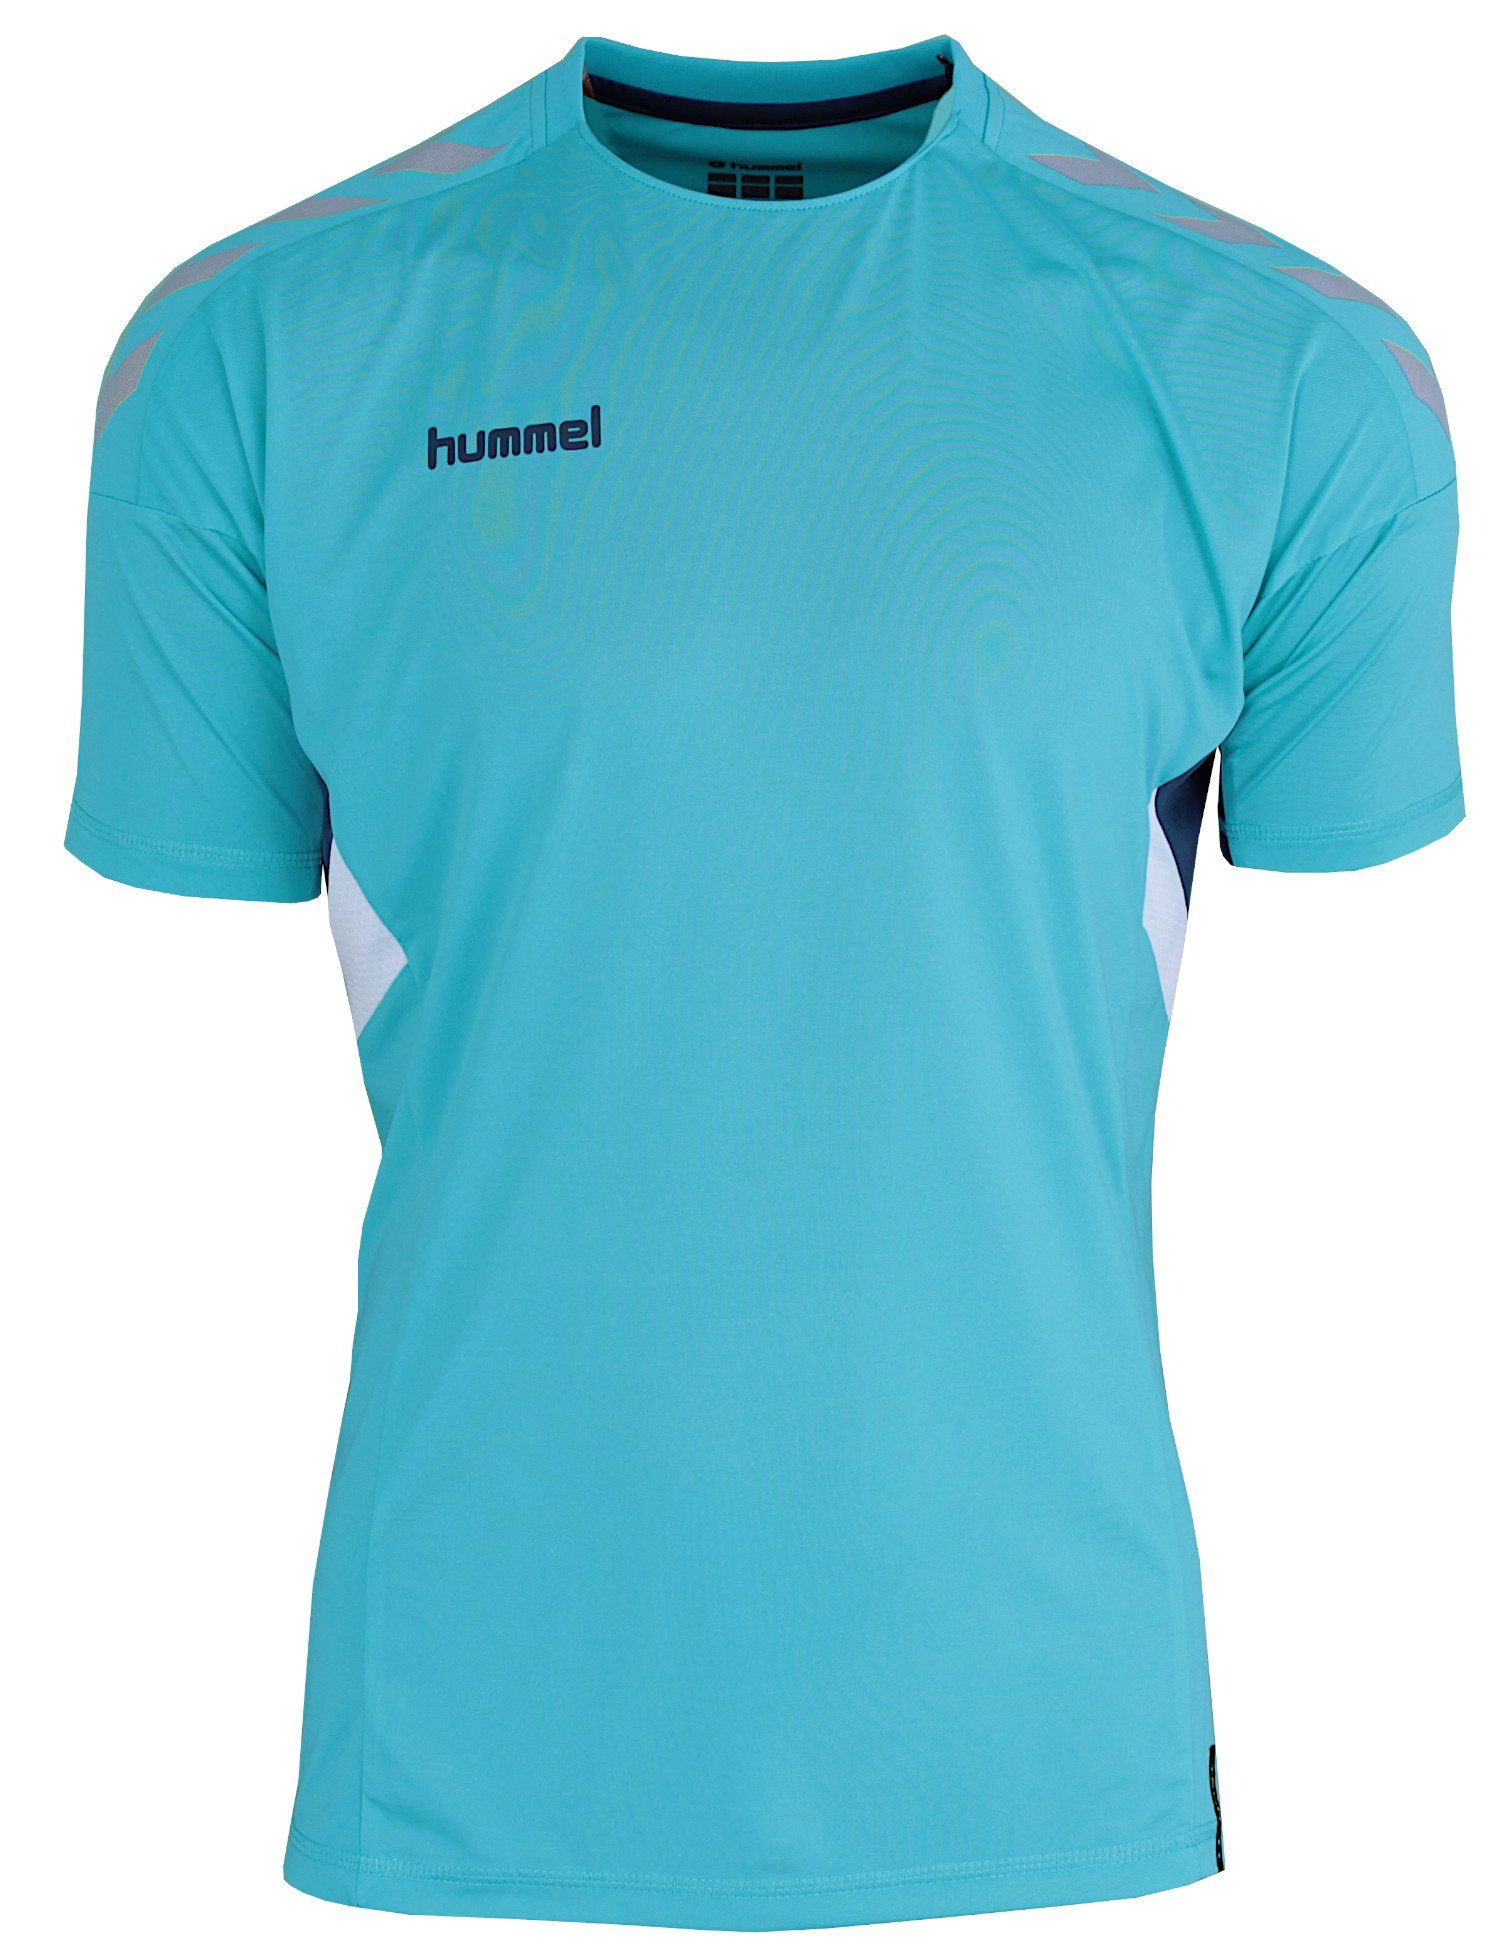 (Scuba Trainingsshirt Trikot Türkis Optimale Move Tech Shirt schnelltrocknend Atmungsaktivität, hummel Blue)